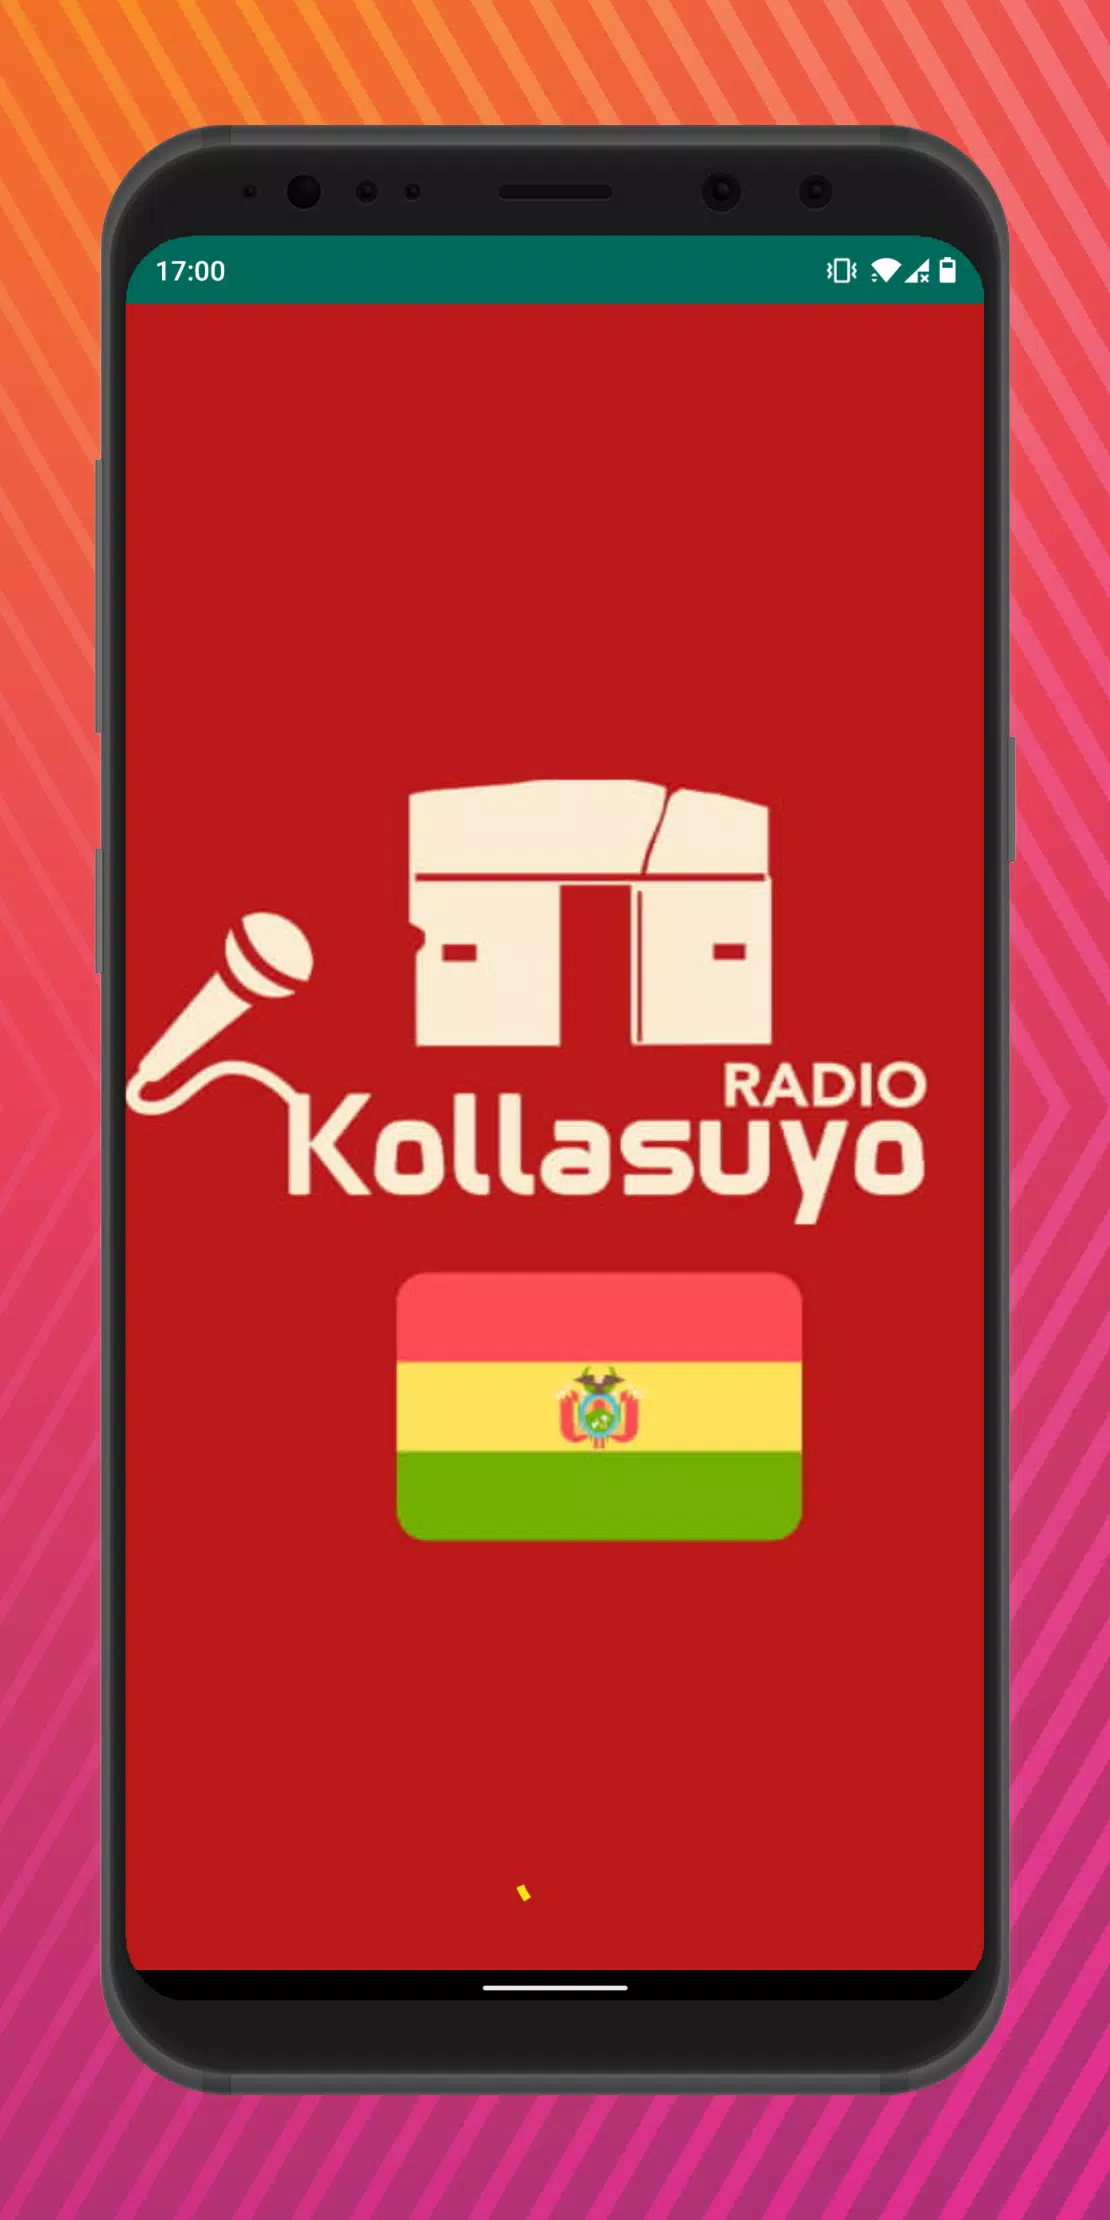 Descarga de APK de Radio Kollasuyo Potosí Bolivia para Android